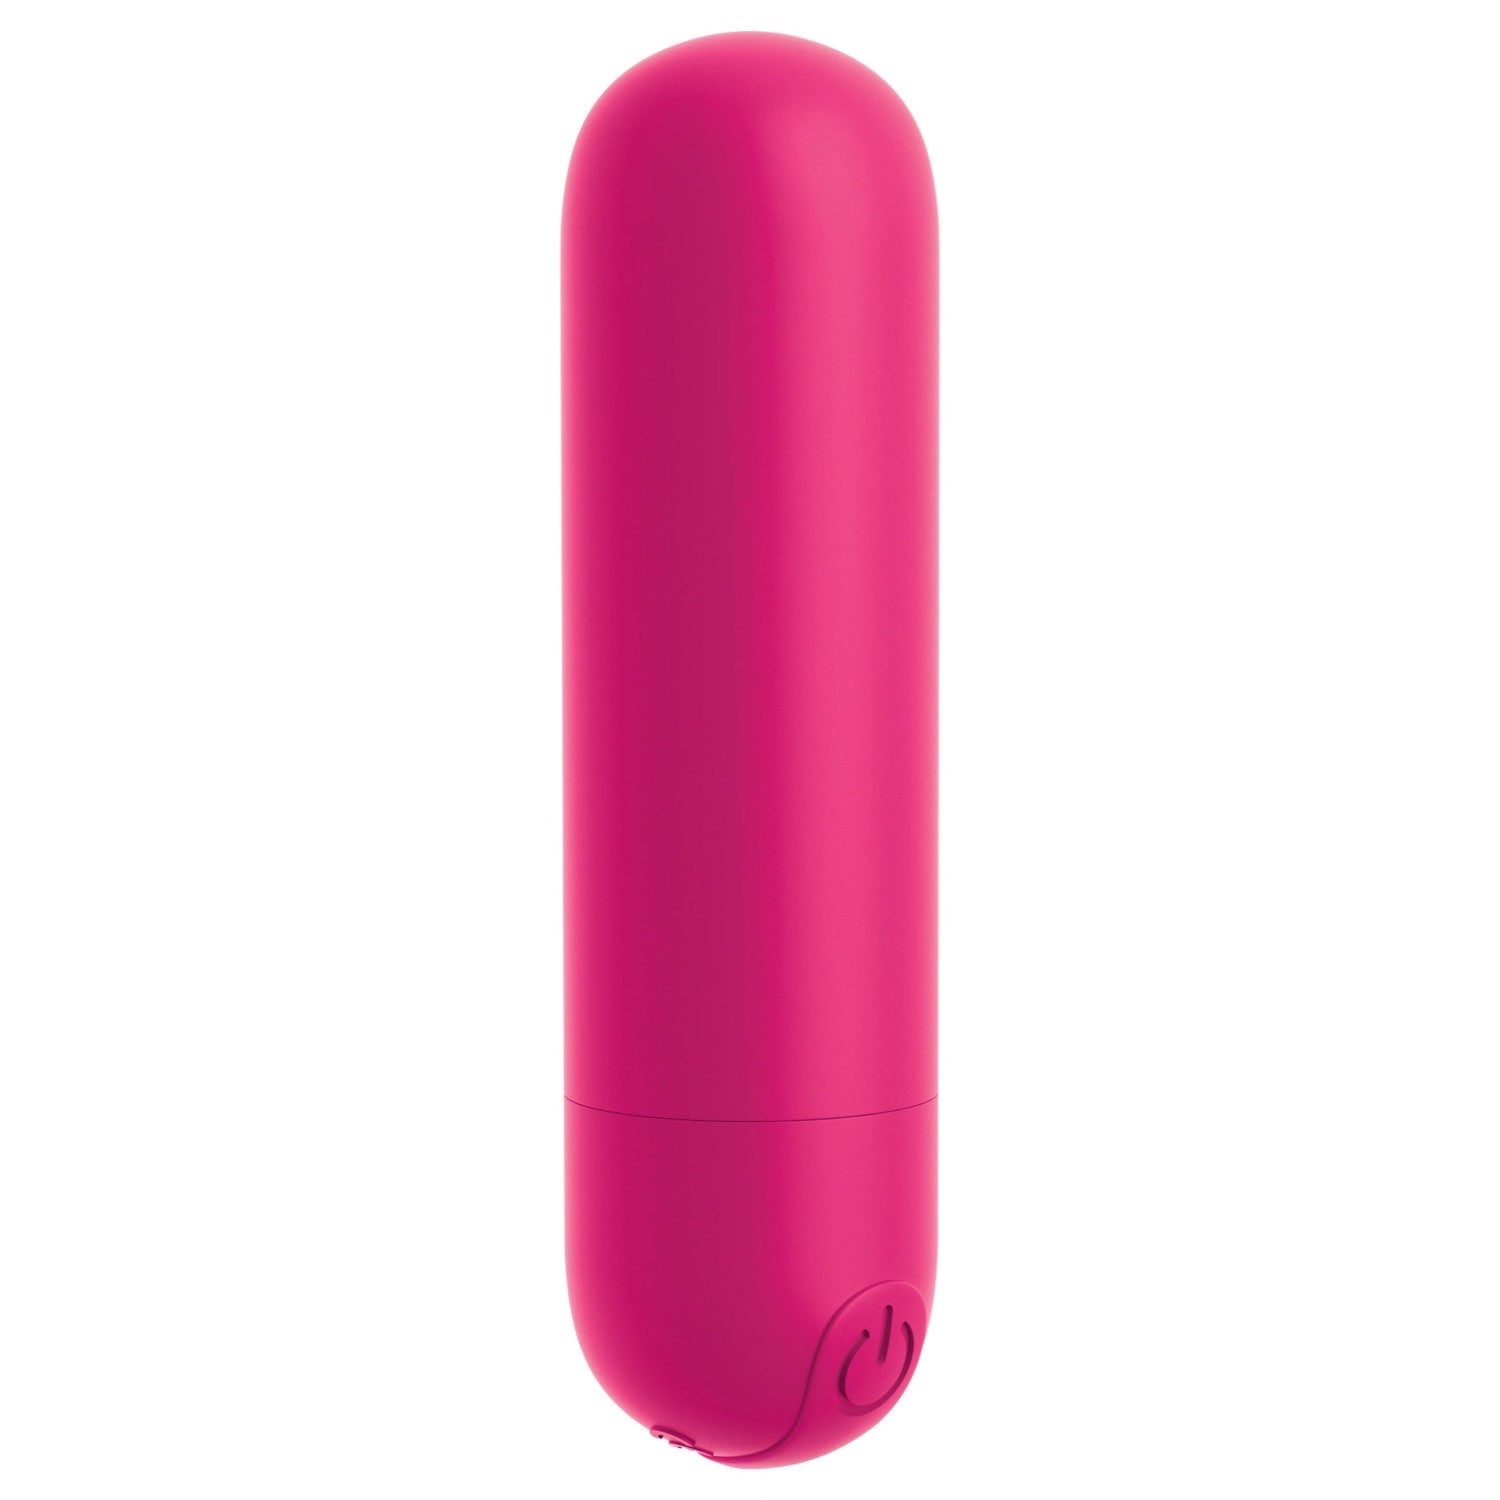 我的天啊！ 我的天啊！ Bullets #Play - 紫红色 USB 可充电子弹头 by Pipedream